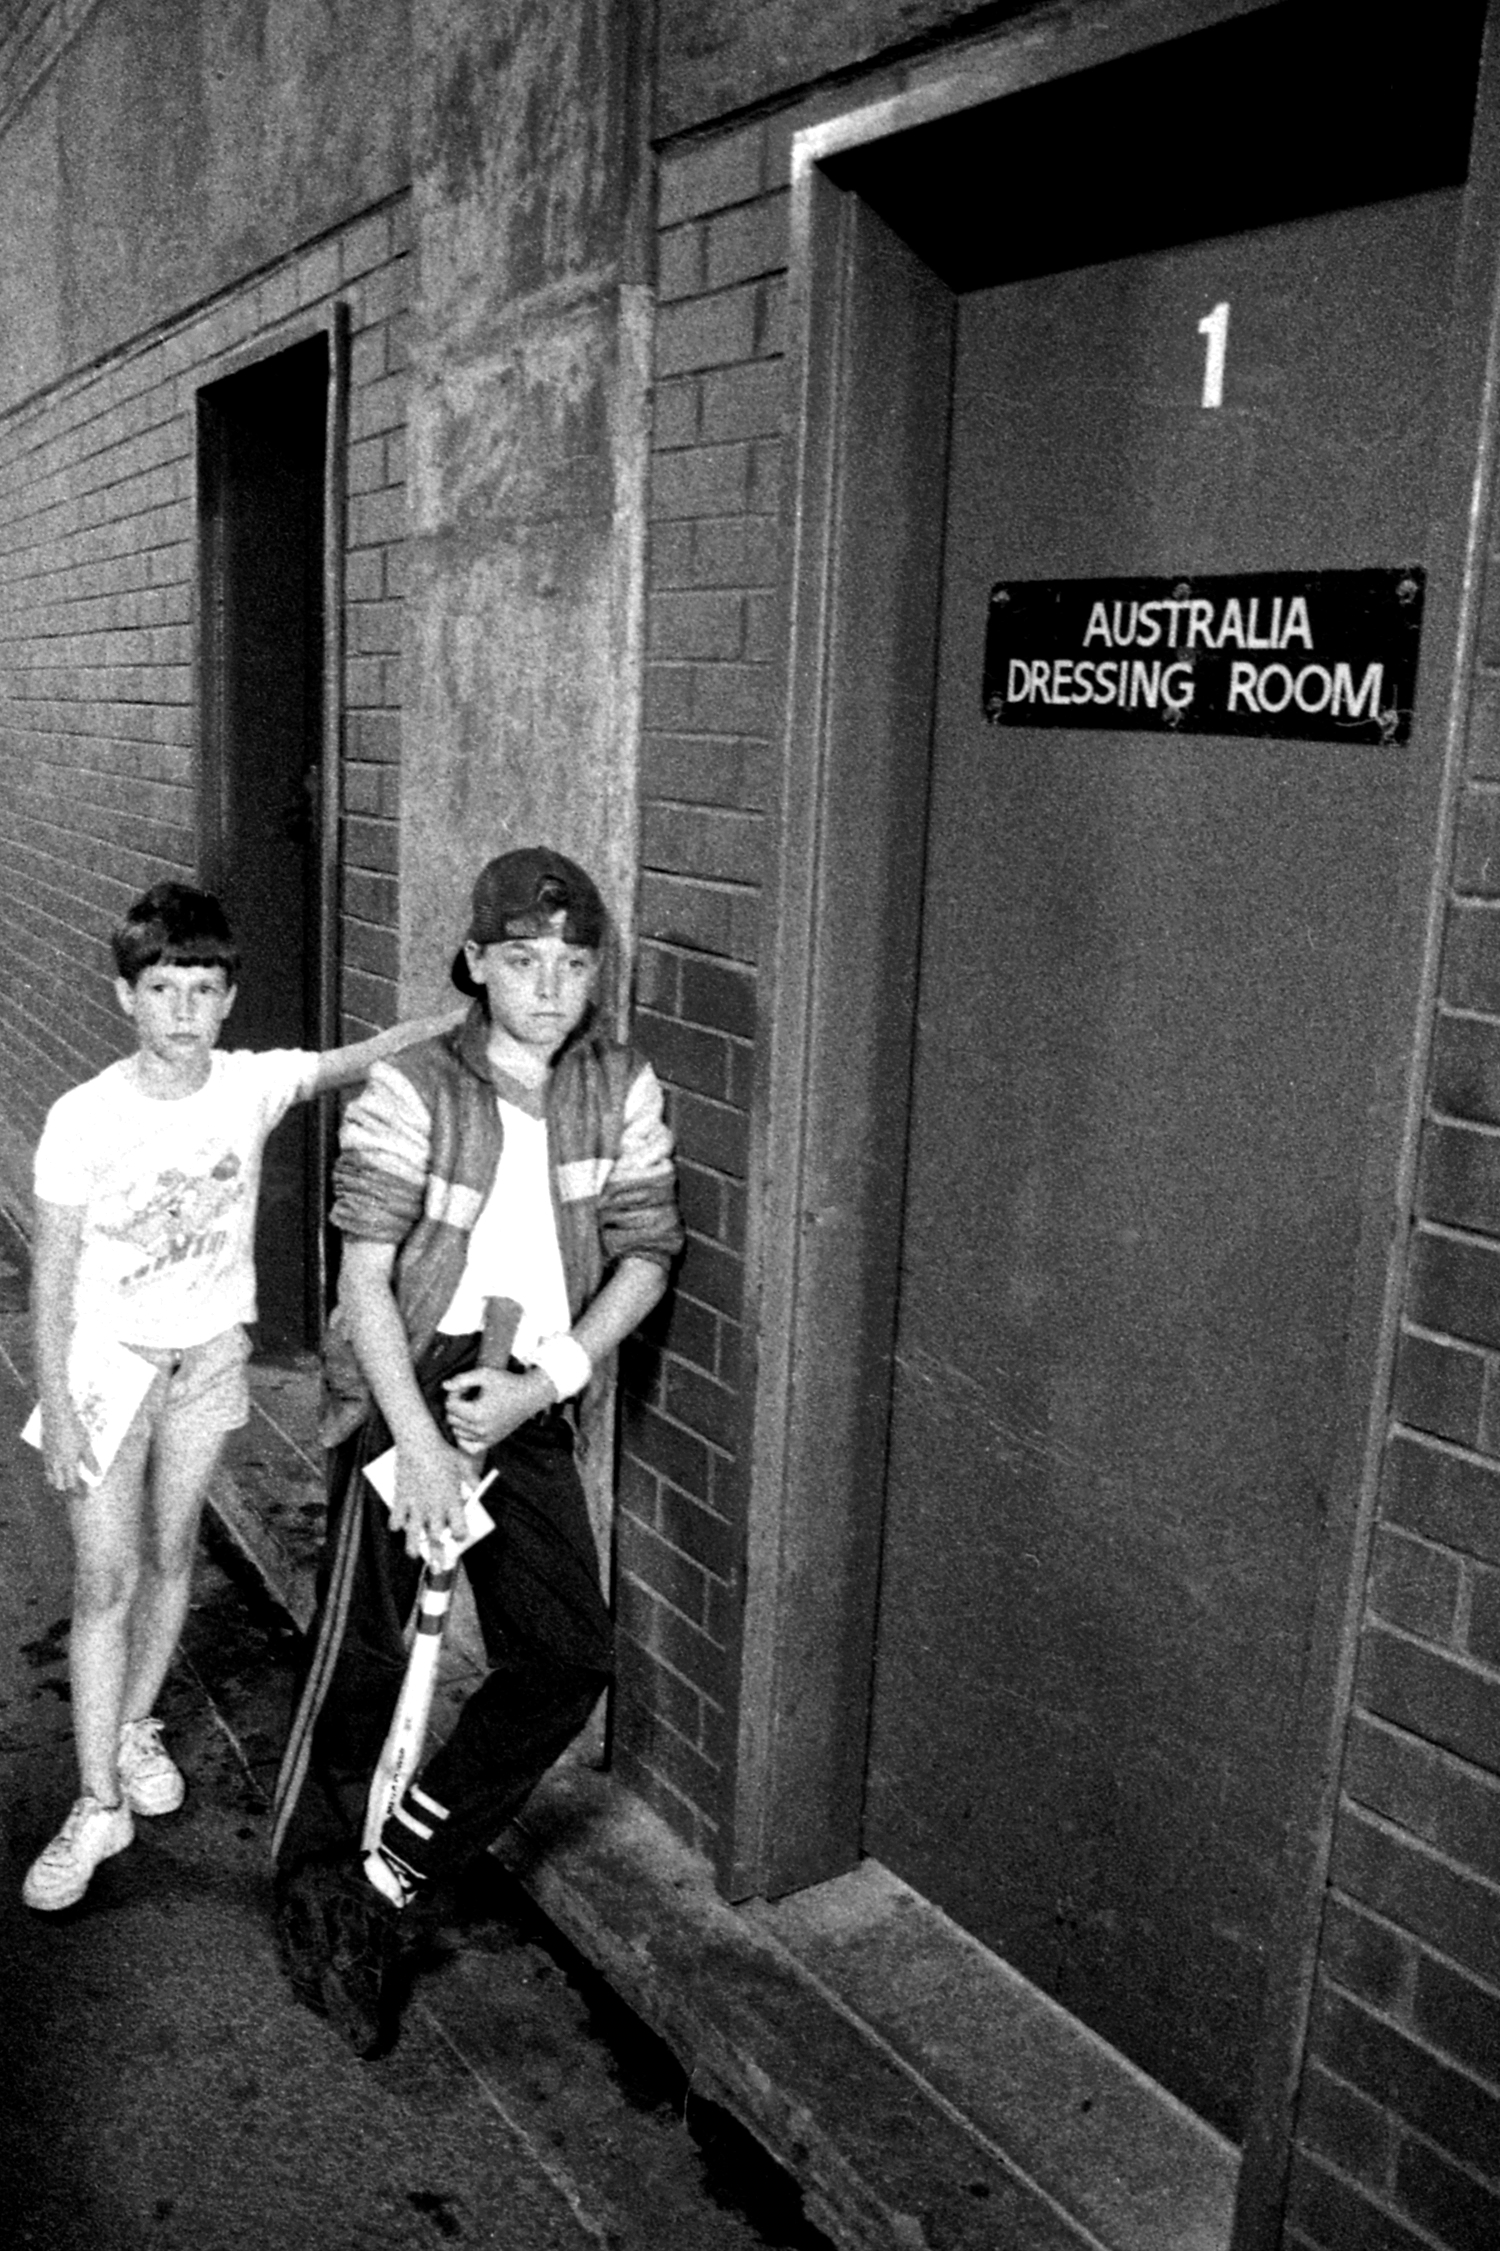 Melbourne Cricket Ground, December 1990